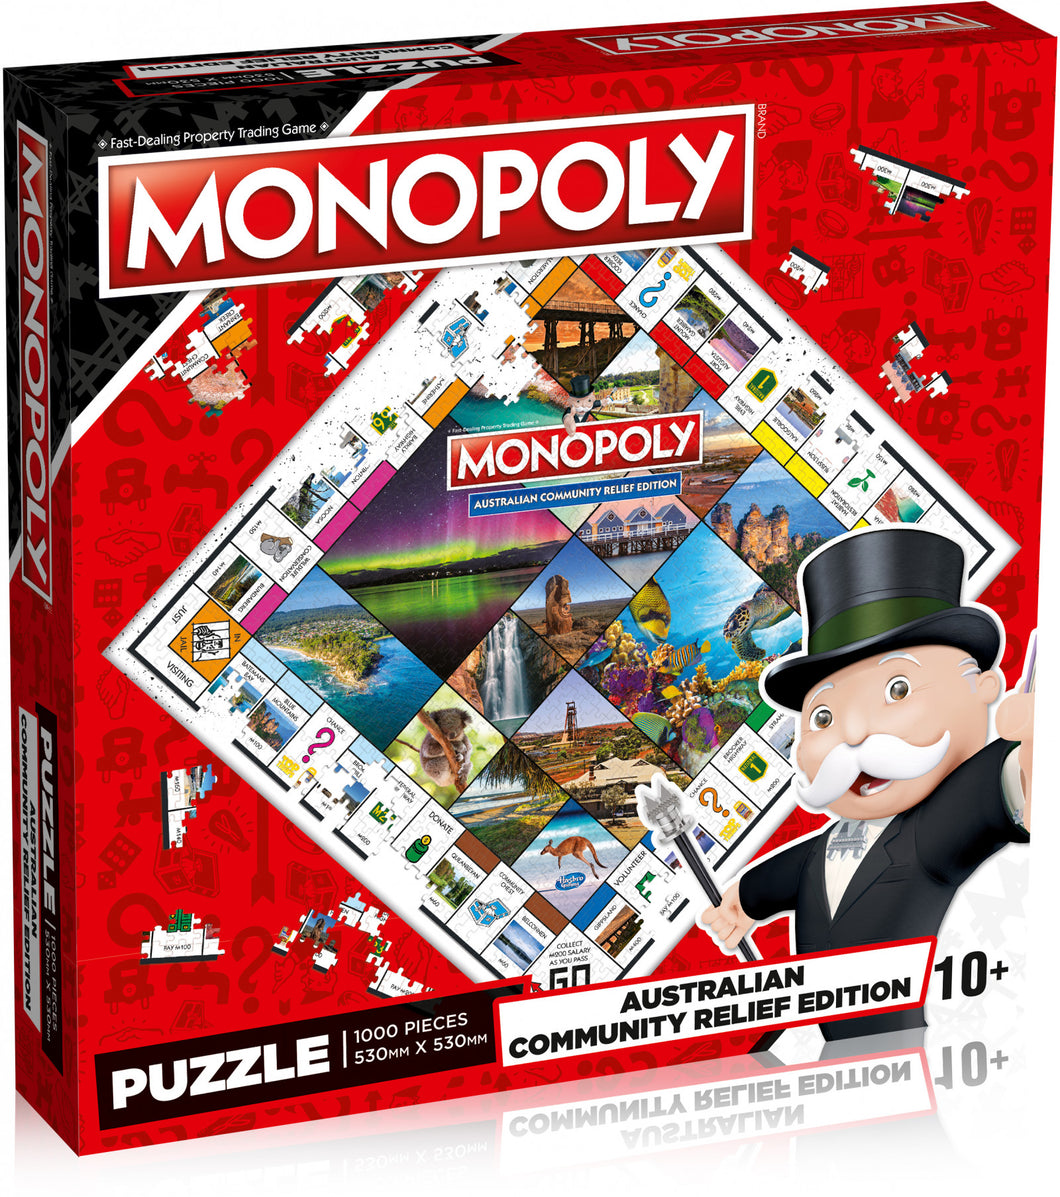 Australian Community Relief Monopoly Puzzle 1000 Pieces